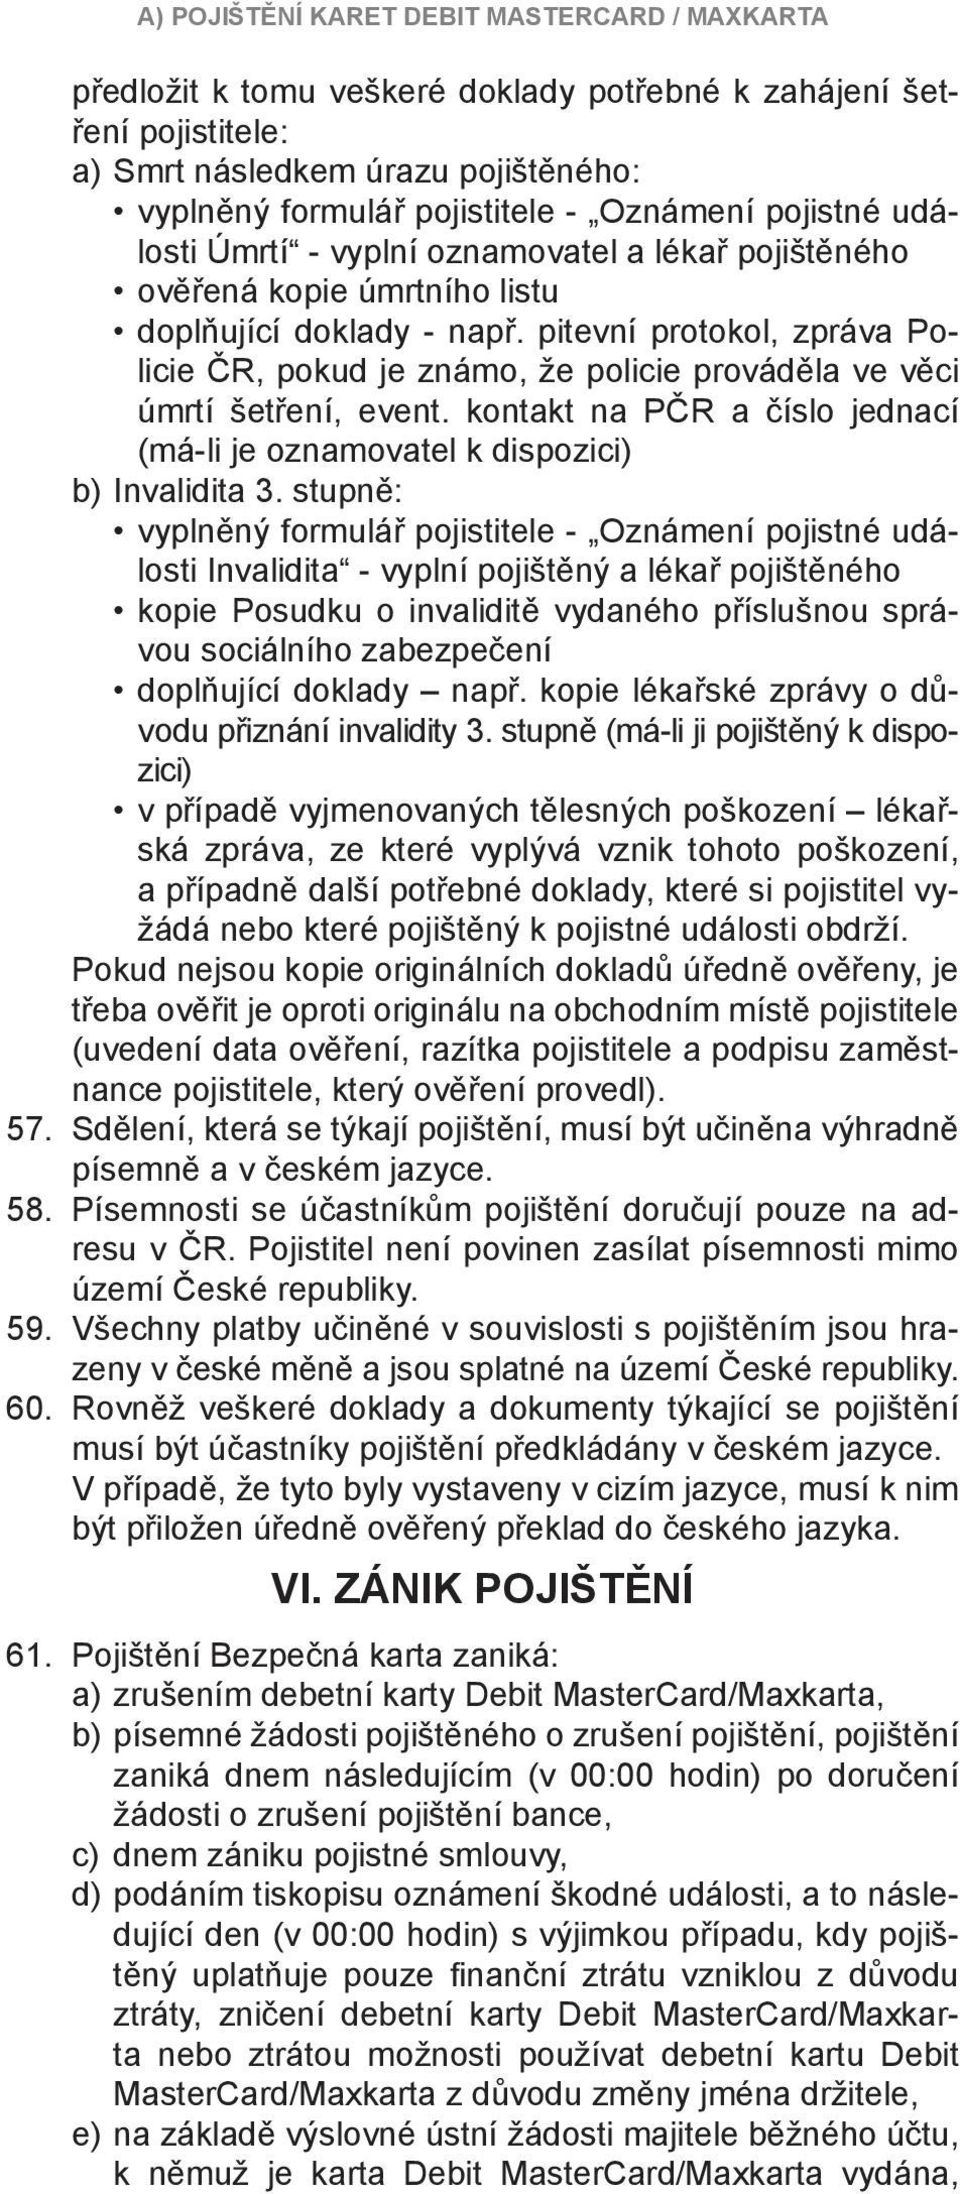 pitevní protokol, zpráva Policie ČR, pokud je známo, že policie prováděla ve věci úmrtí šetření, event. kontakt na PČR a číslo jednací (má-li je oznamovatel k dispozici) b) Invalidita 3.